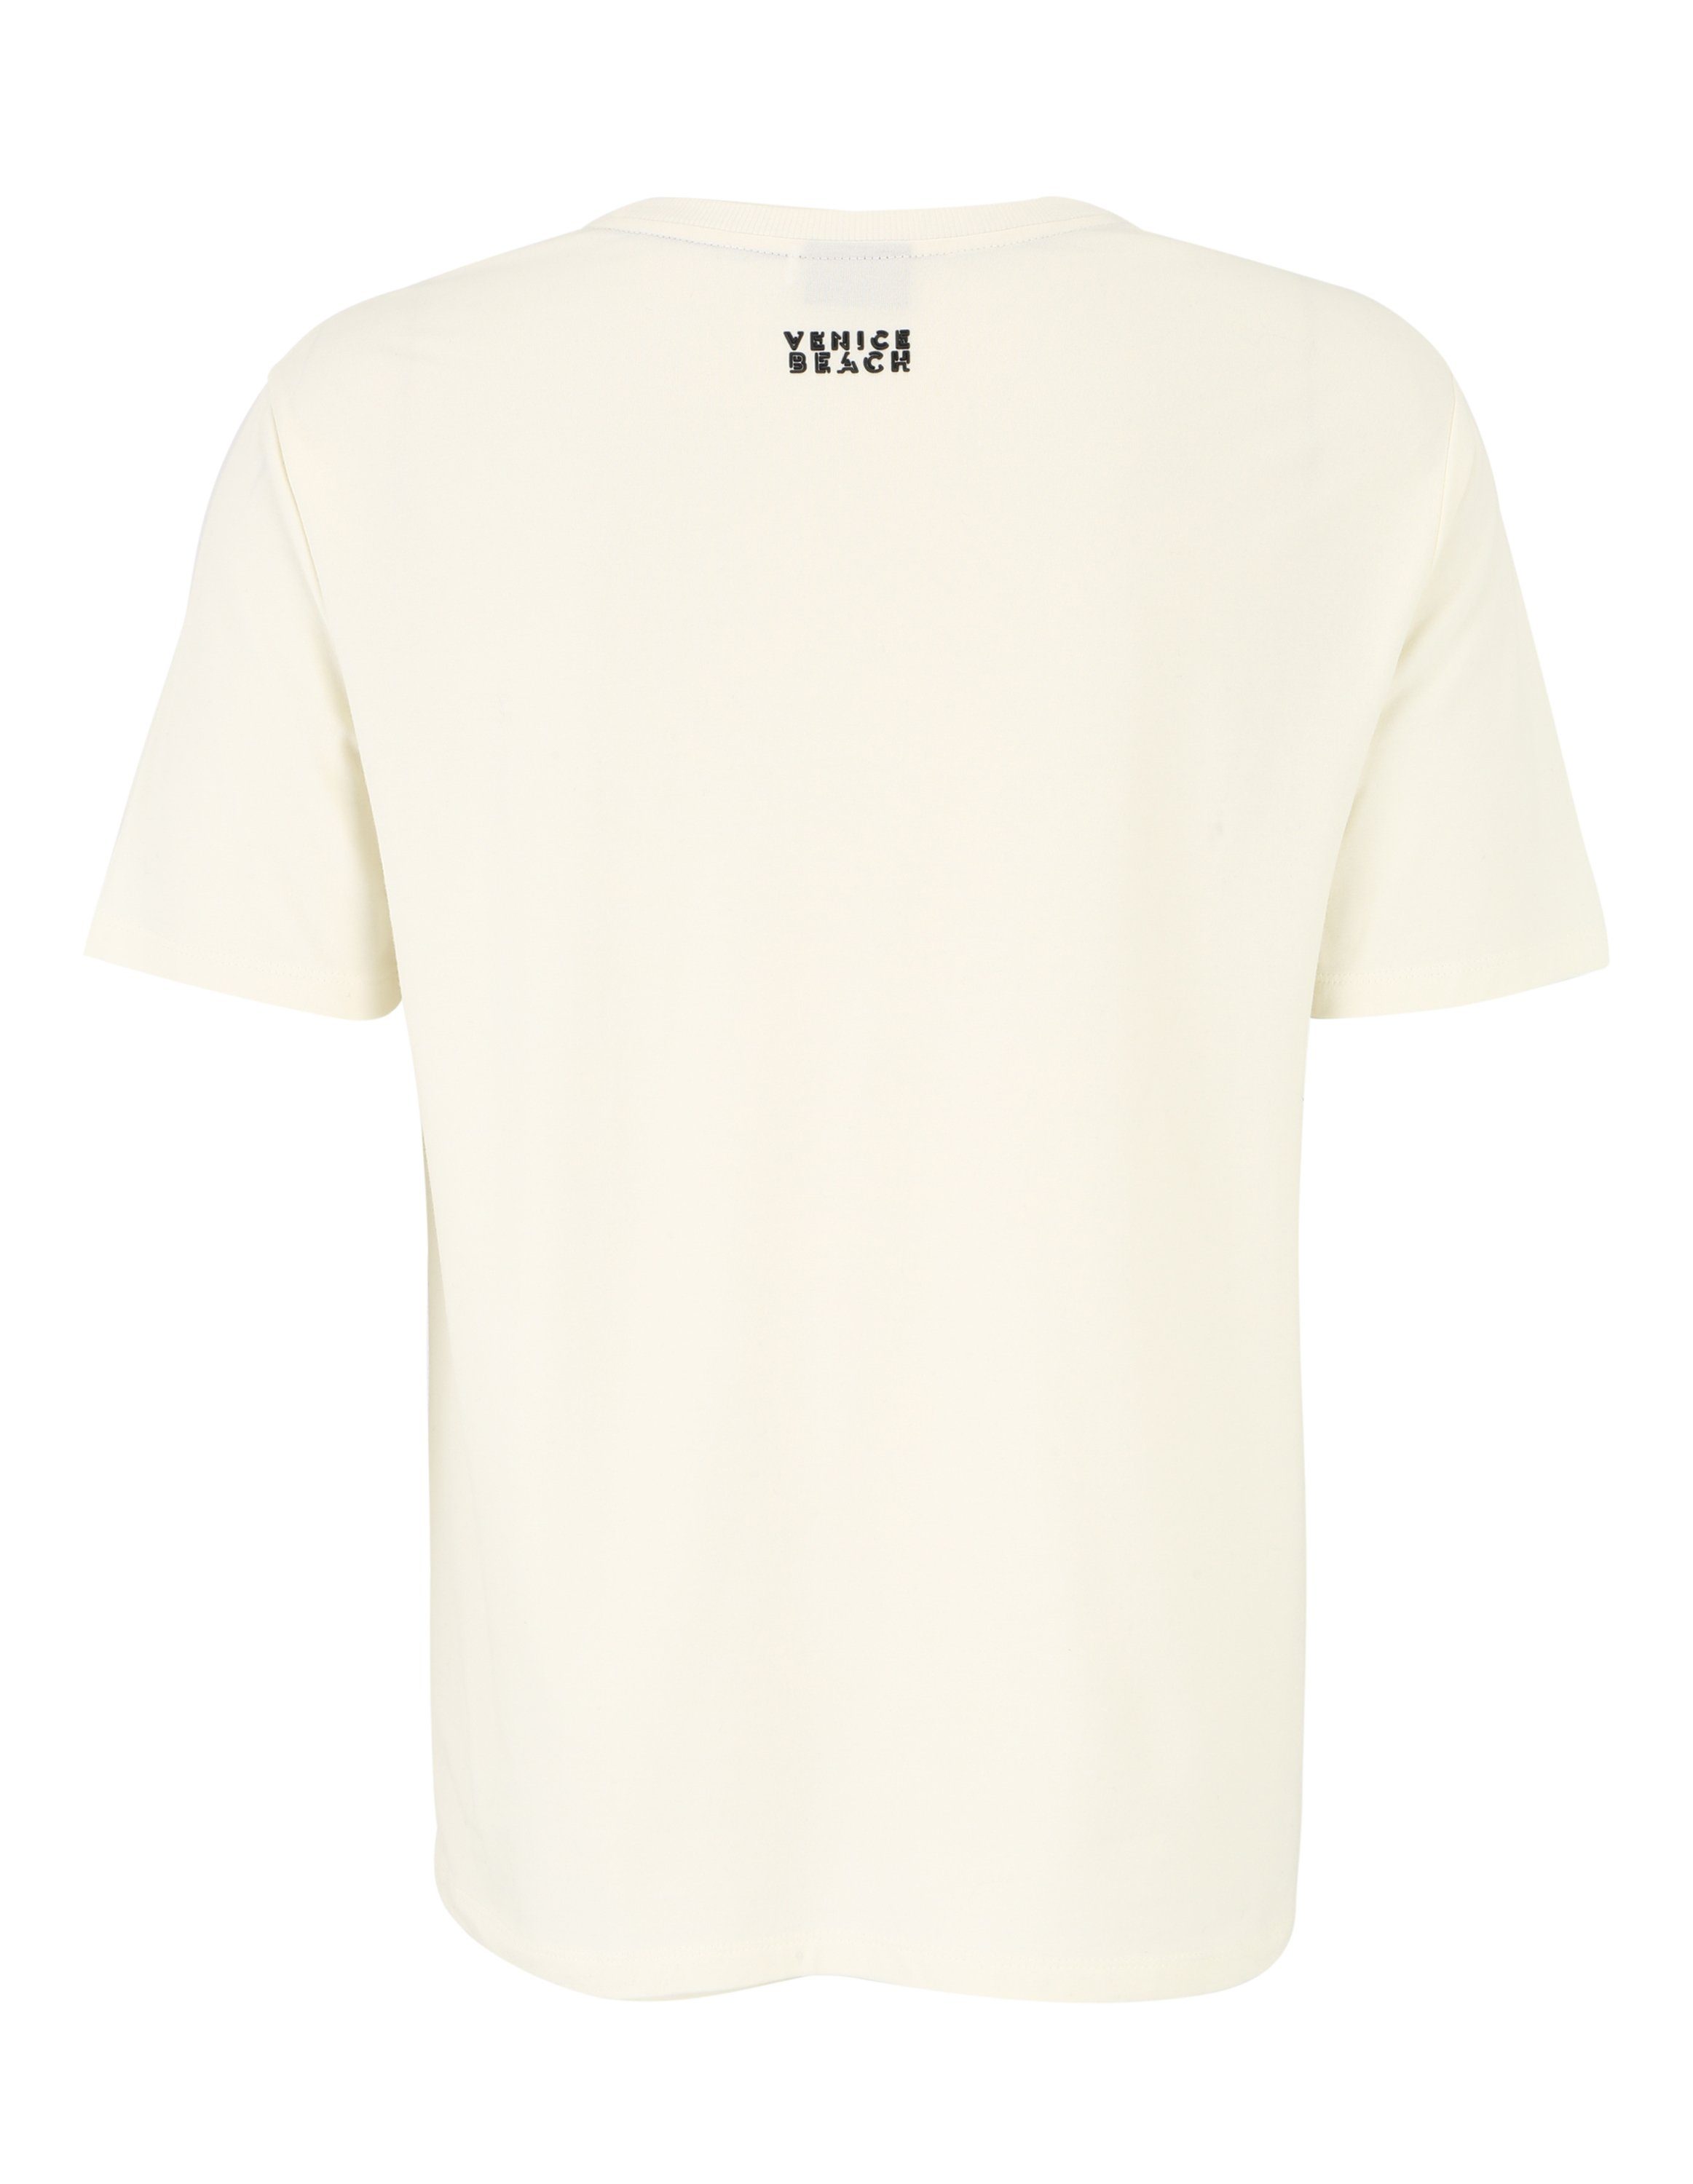 Brett Beach T-Shirt VBM T-Shirt Venice